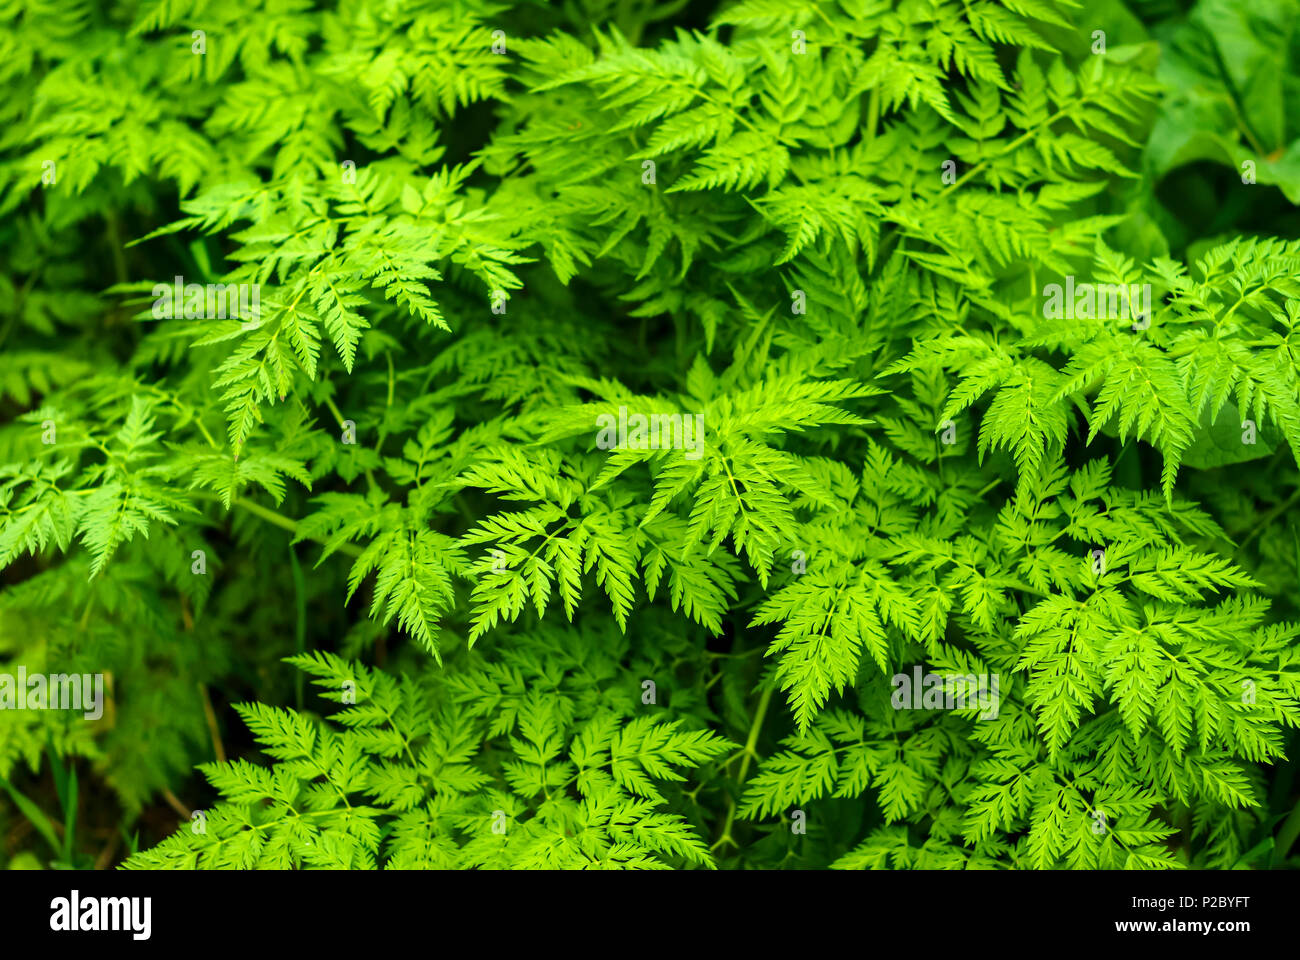 Floral background - foglie verdi di сhaerophyllum (pastinaca cerfoglio) Foto Stock